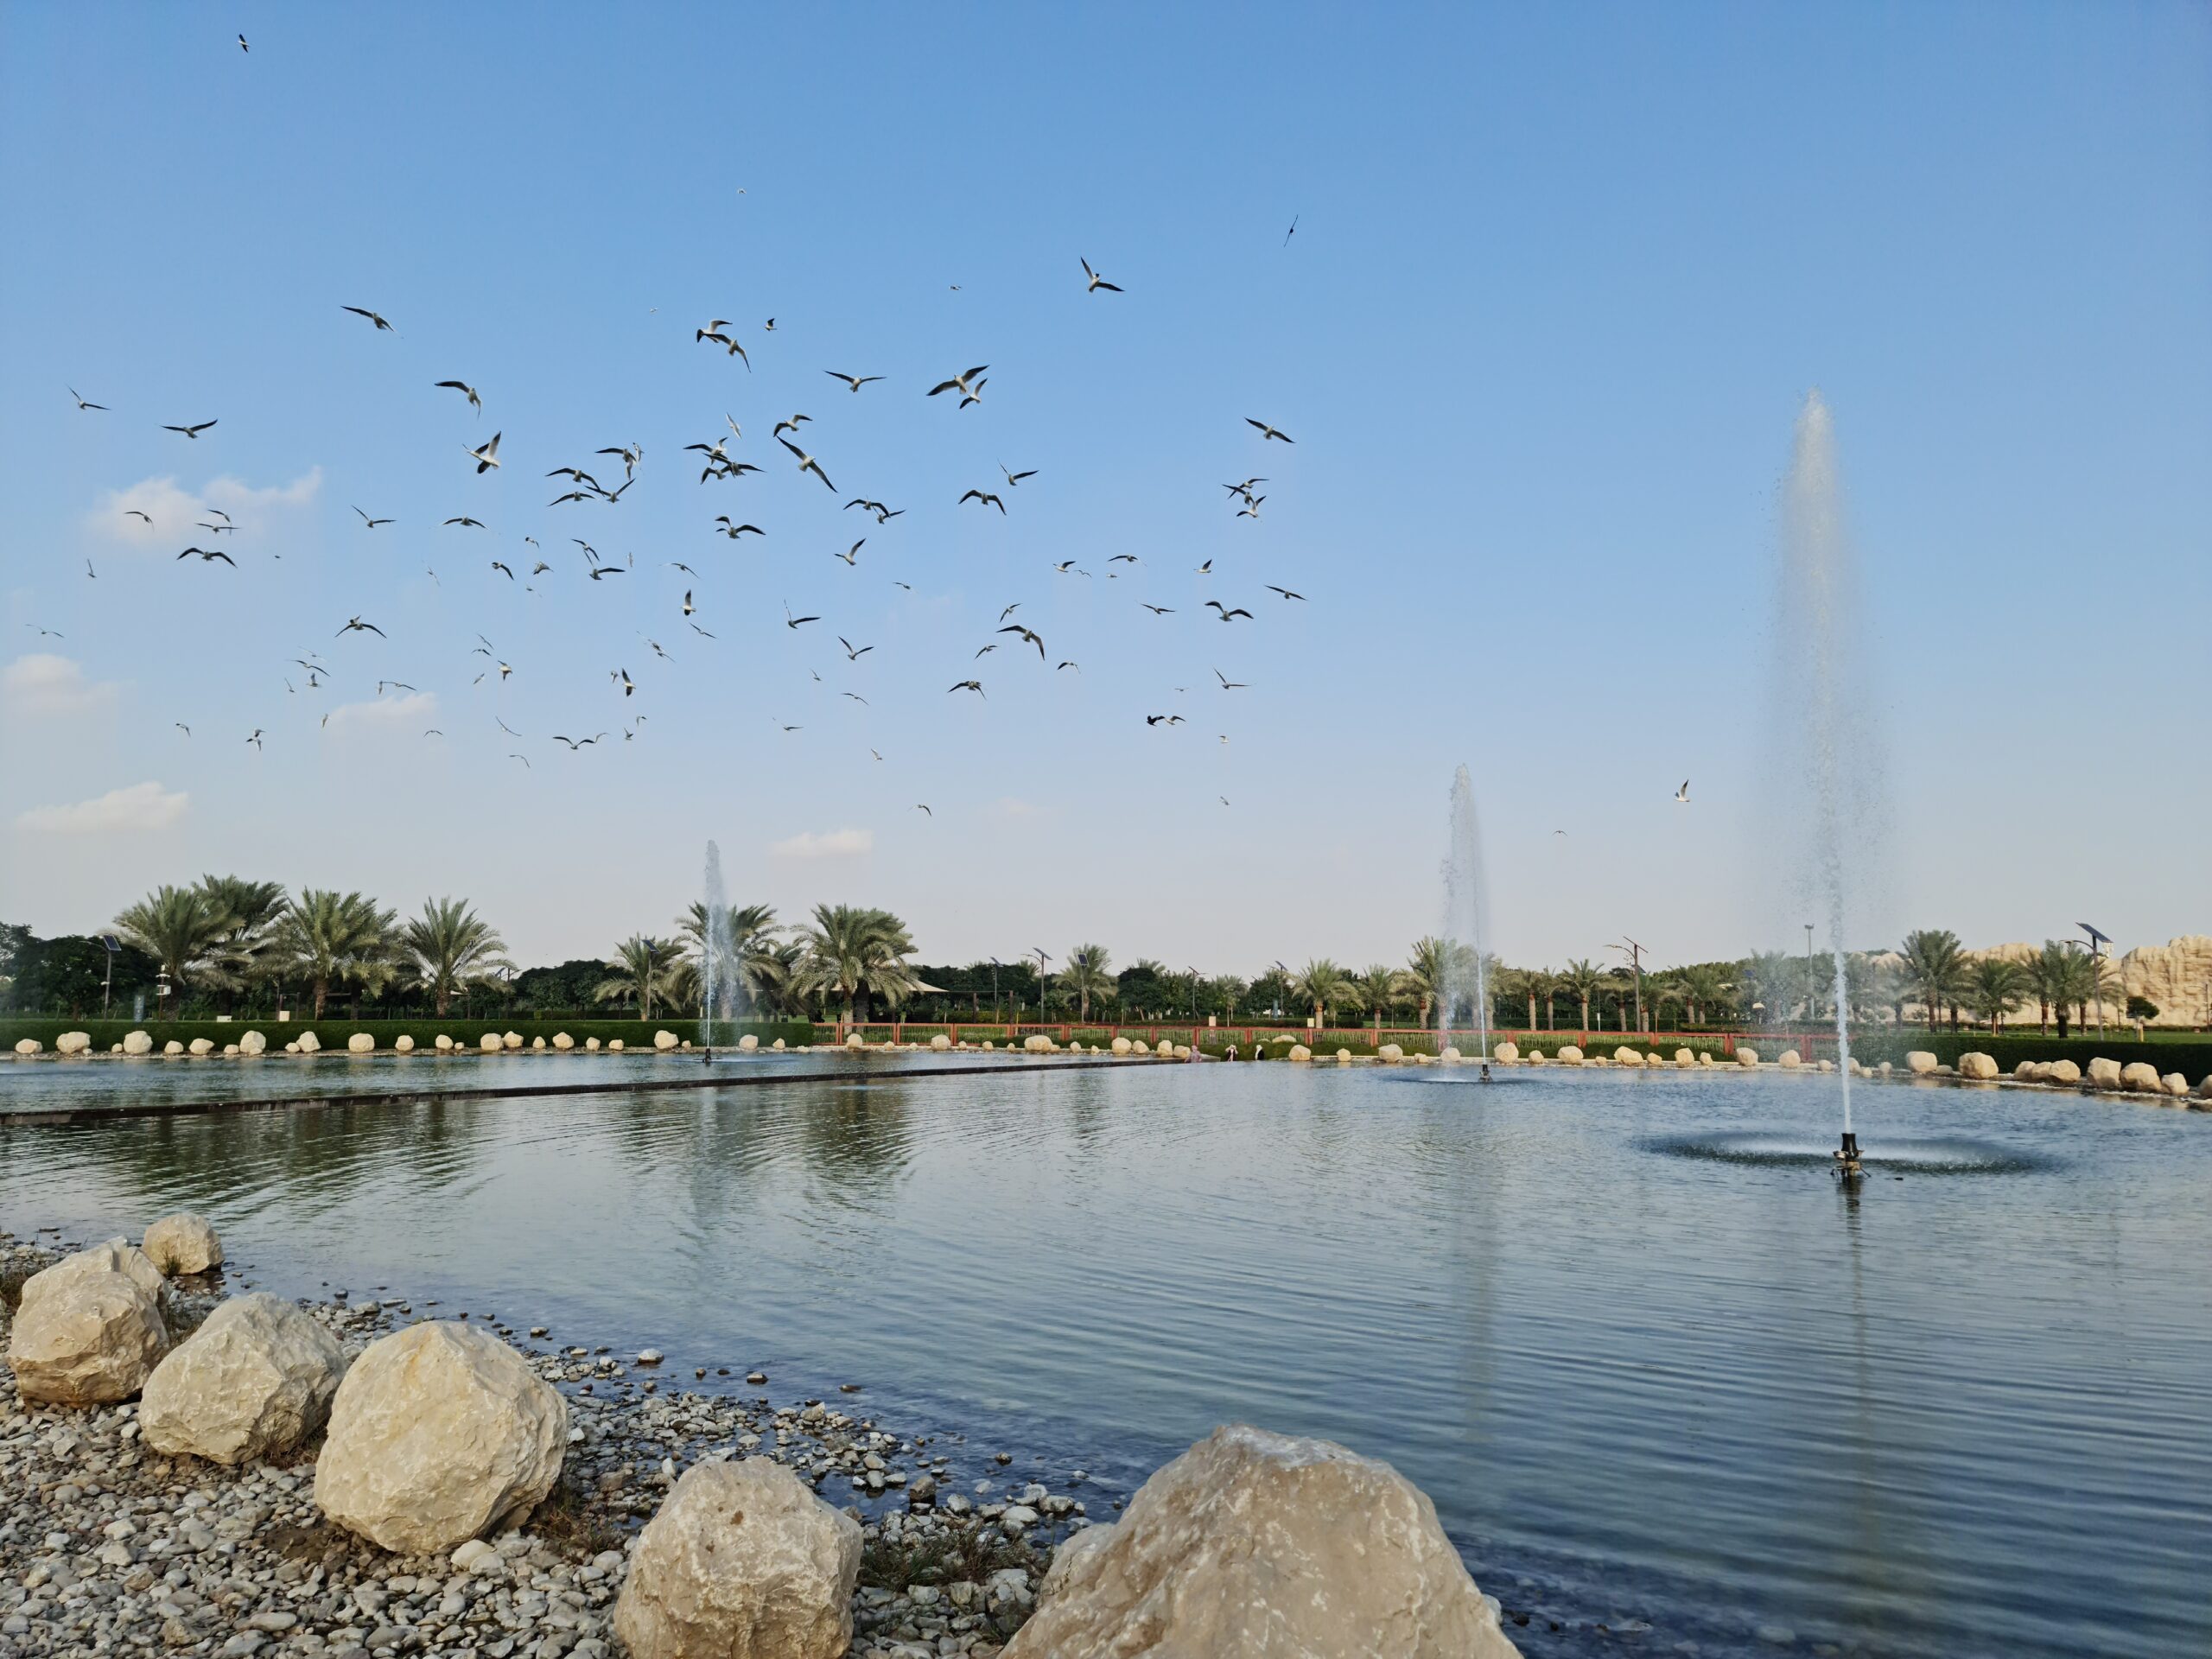 Quranic Park in Dubai